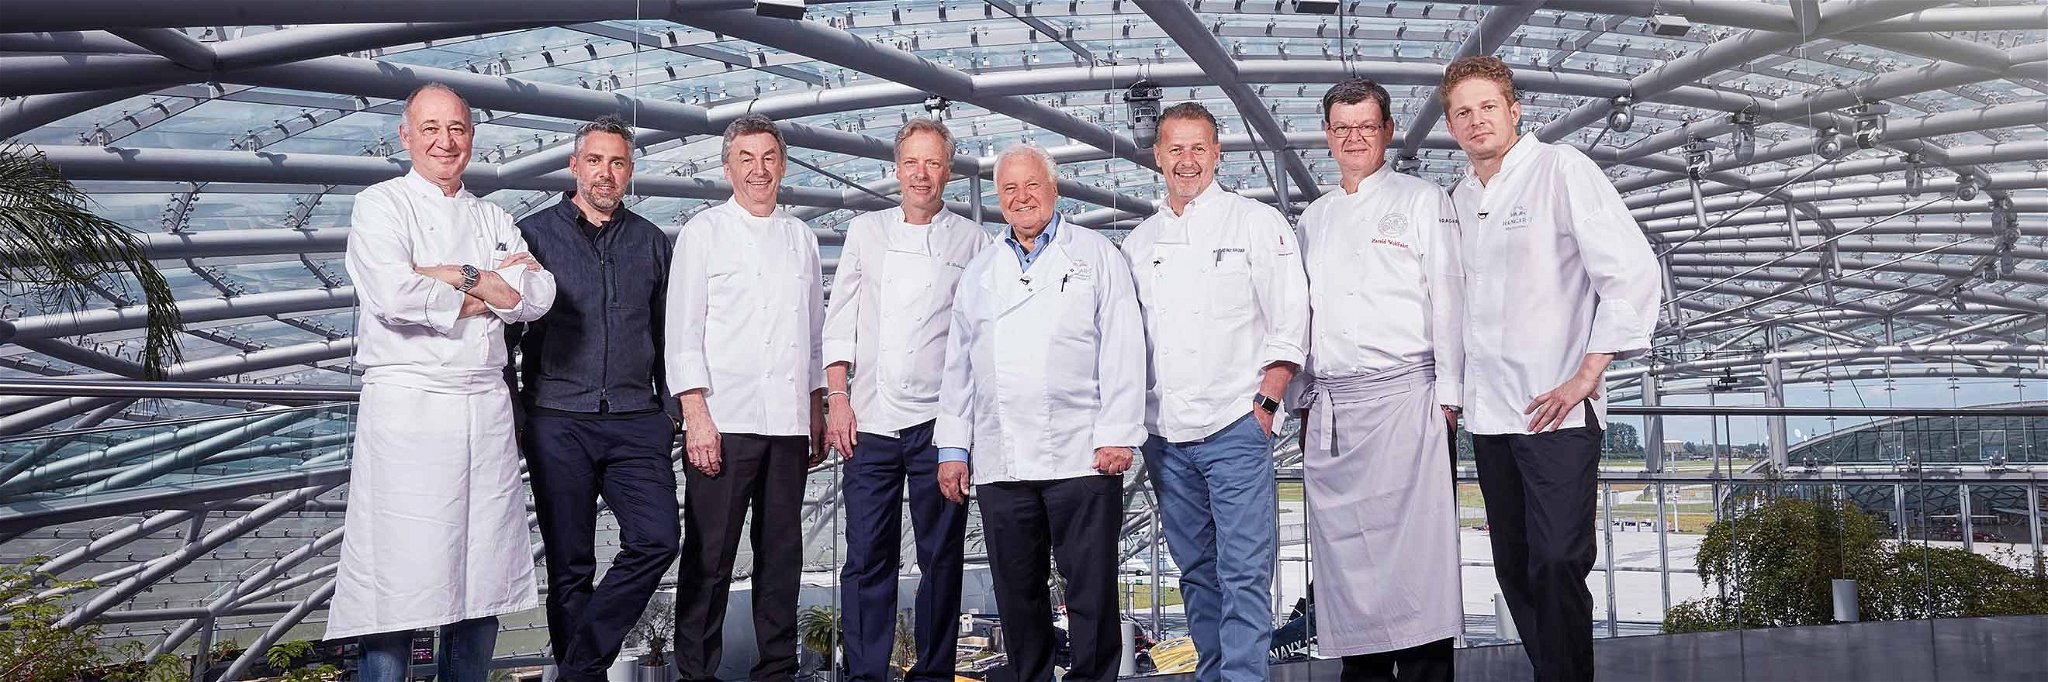 Marc Haeberlin, Roland Trettl, Hans Haas, Bobby Bräuer, Eckart Witzigmann, Karlheinz Hauser, Harald Wohlfahrt und Martin Klein